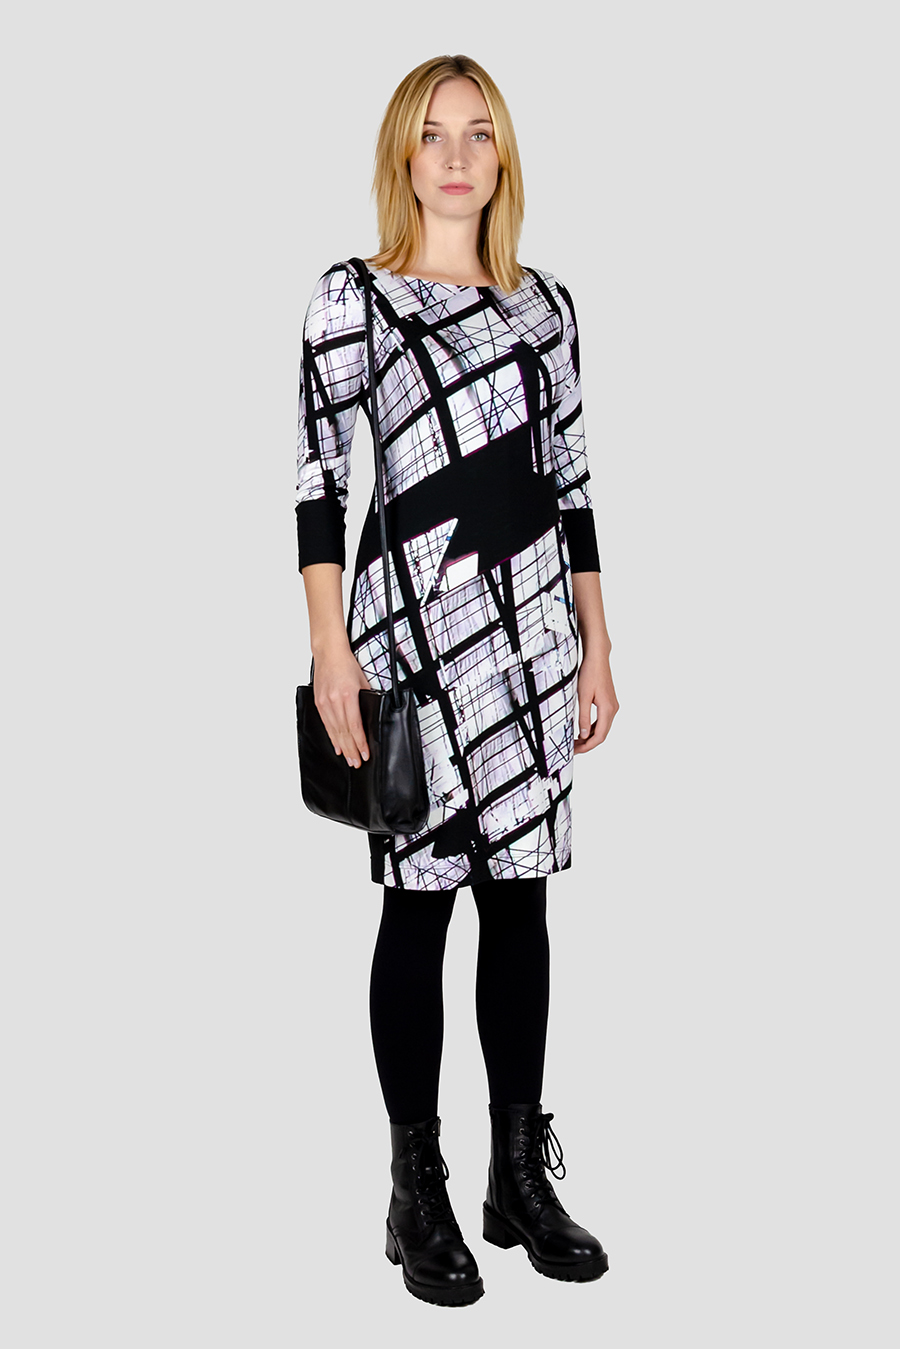 Fensterkleid Jersey Kleid, grafisches Design Schwarz Weiss